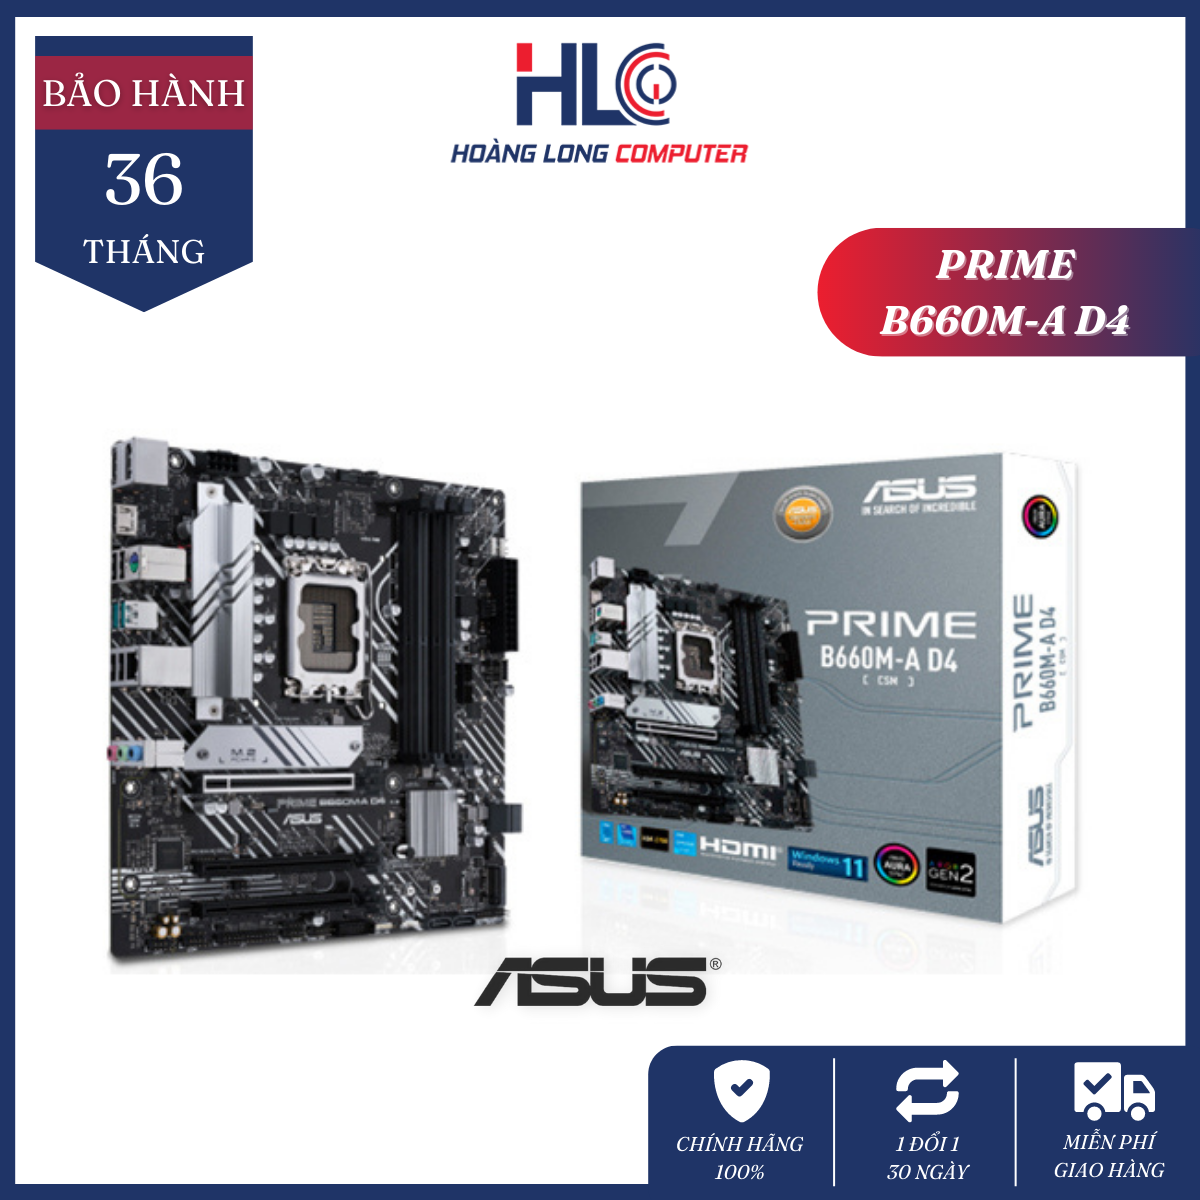 Mainboard Asus PRIME B660M-A D4-CSM – Intel B660, Socket 1700, m-ATX, 4 Khe Ram DDR4 – Bo mạch chủ PC chính hãng ASUS mới 100% – Bảo hành 36 tháng 1 đổi 1 – HLC GAMING